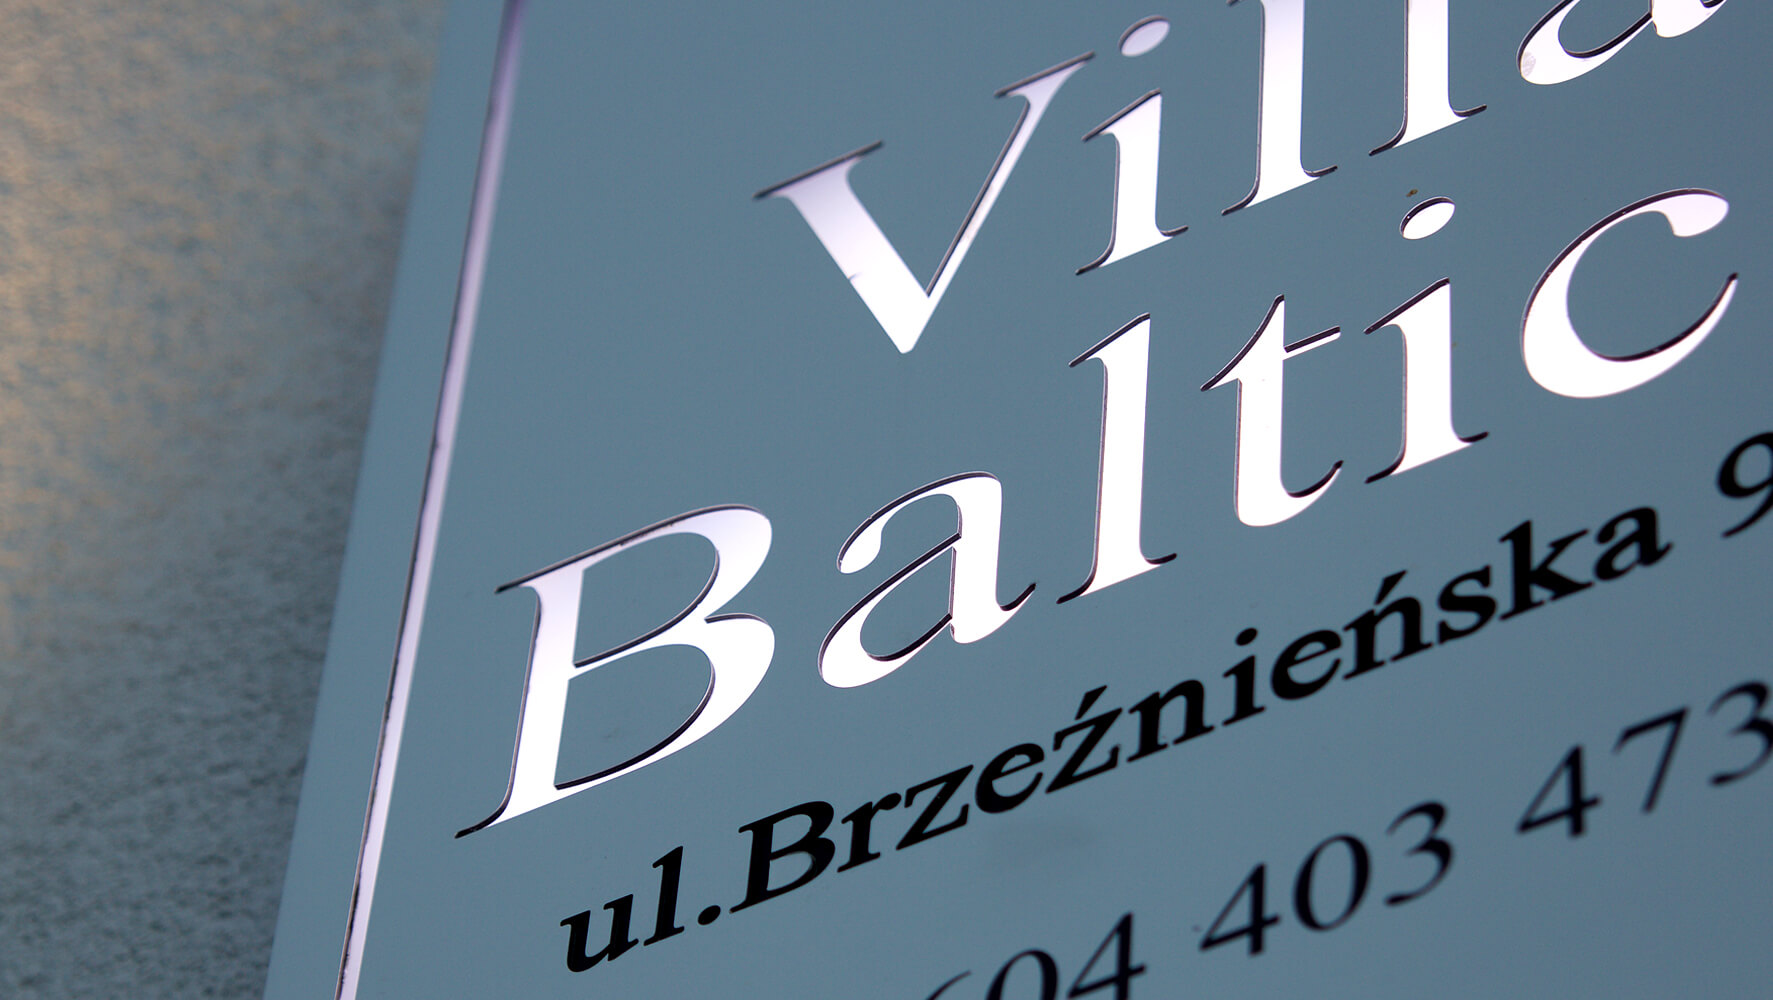 Villa Baltica - Villa Baltica - company signboard on dibond coffer